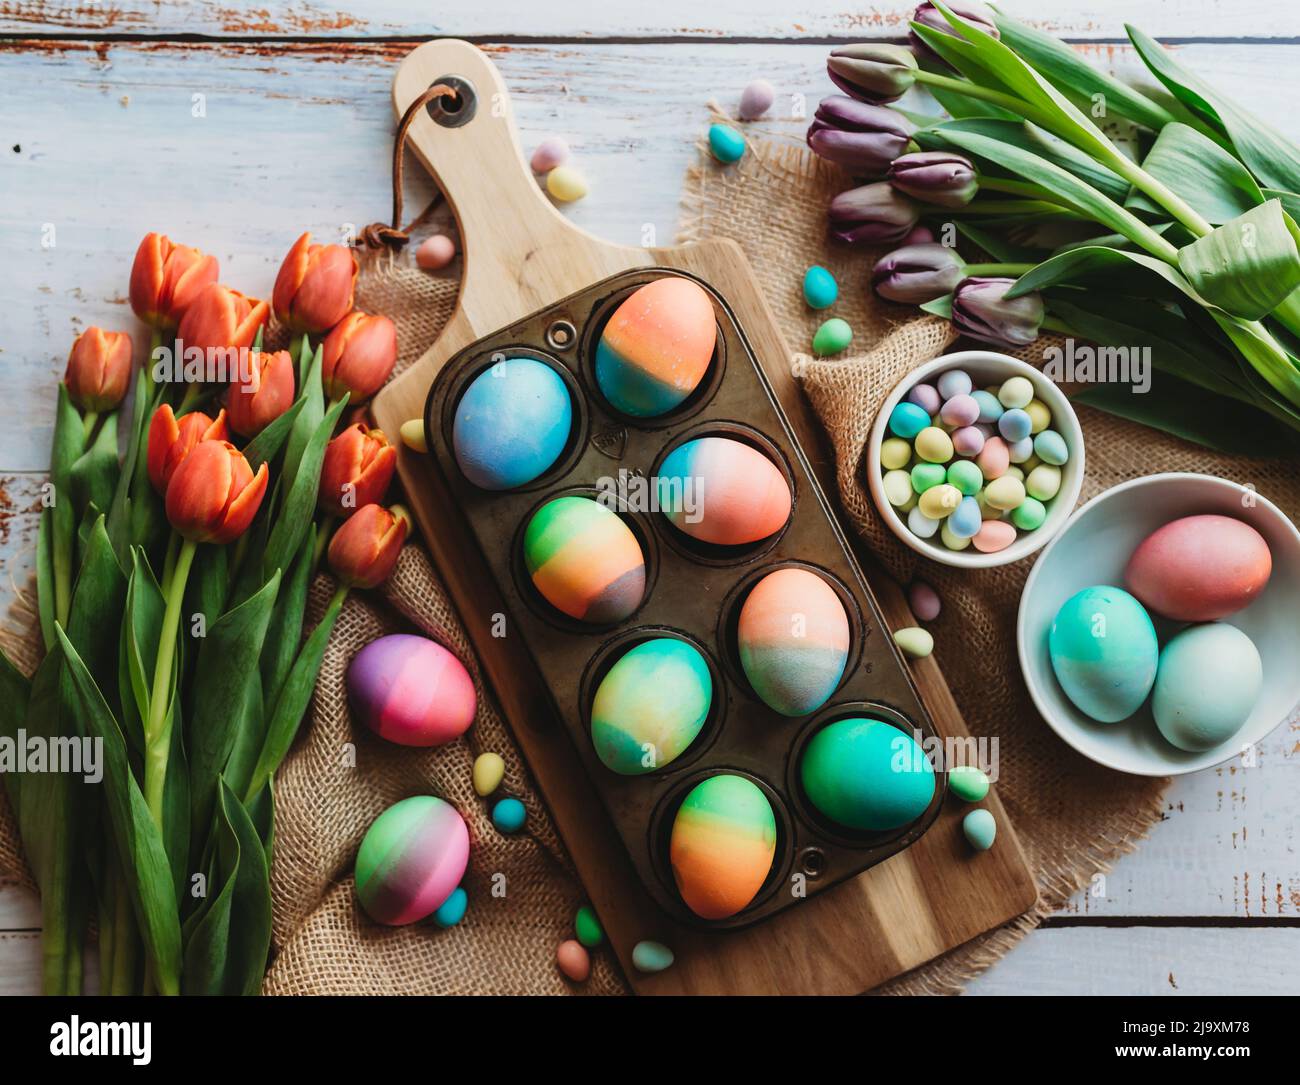 Bandeja de huevos de Pascua de colores brillantes rodeada de tulipanes. Foto de stock